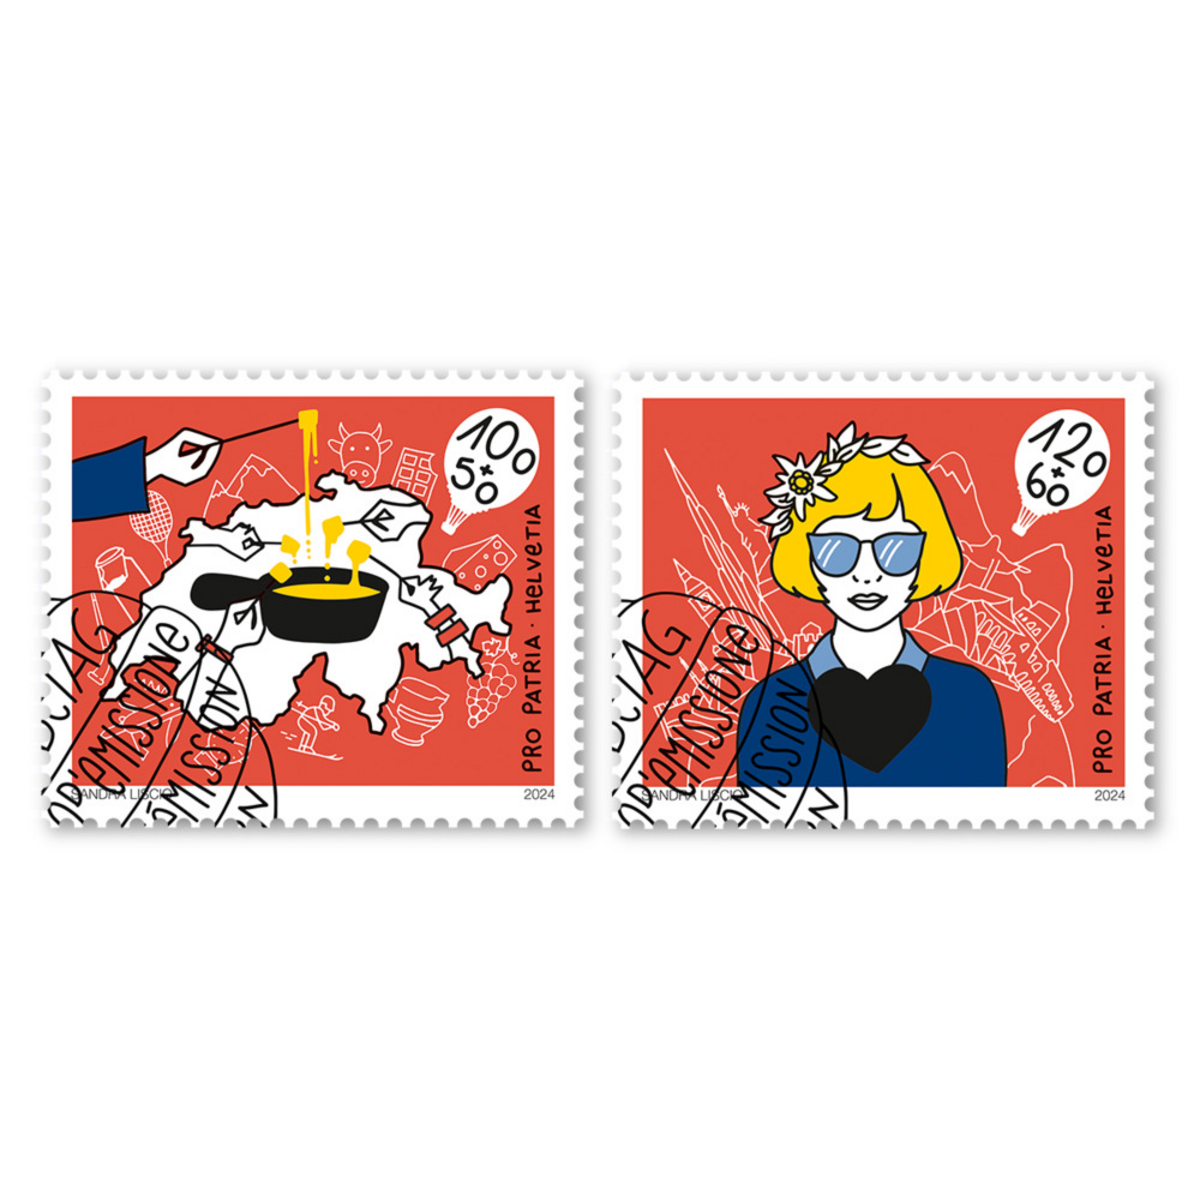 Так называемая «Пятая Швейцария», швейцарская диаспора за рубежом, стала темой новой серии почтовых марок.